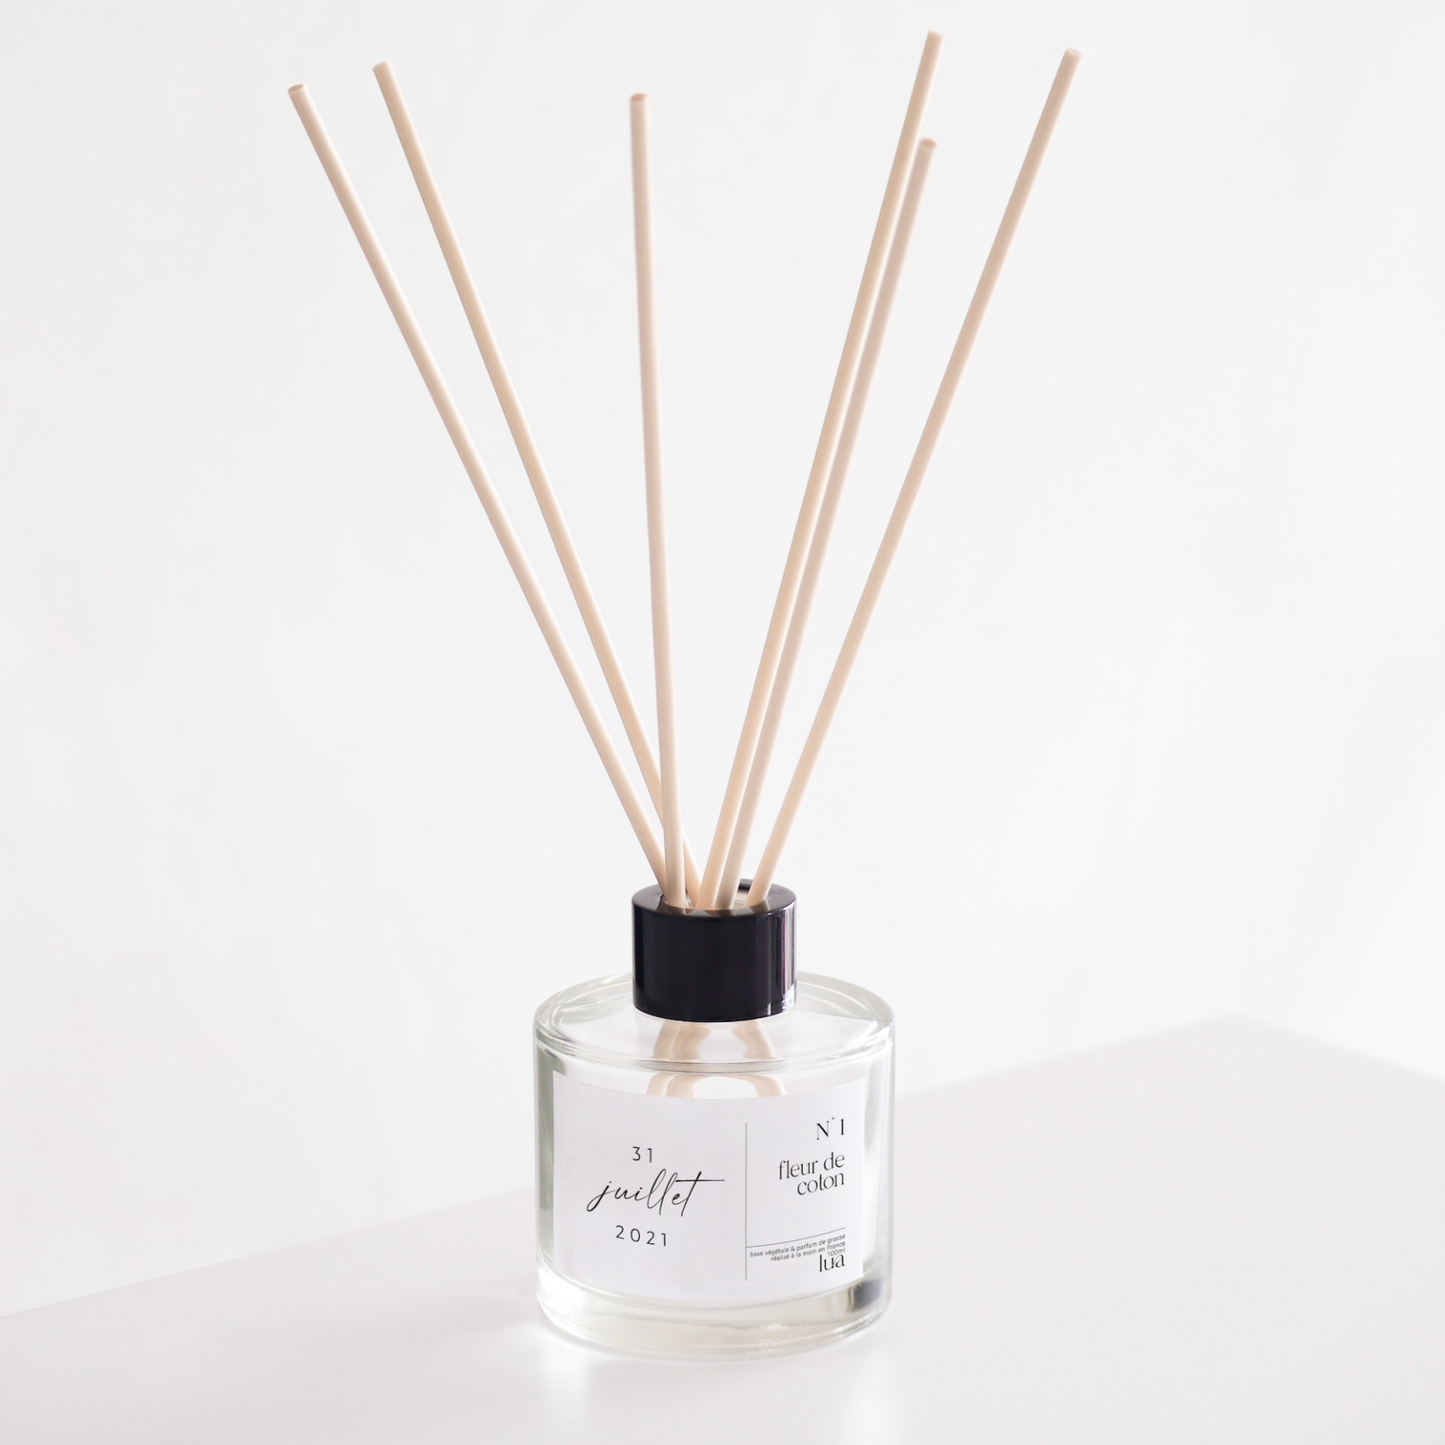 Diffuseur de parfum transparent, personnalisable à partir d'une date, parfum de Grasse, fleur de coton. 